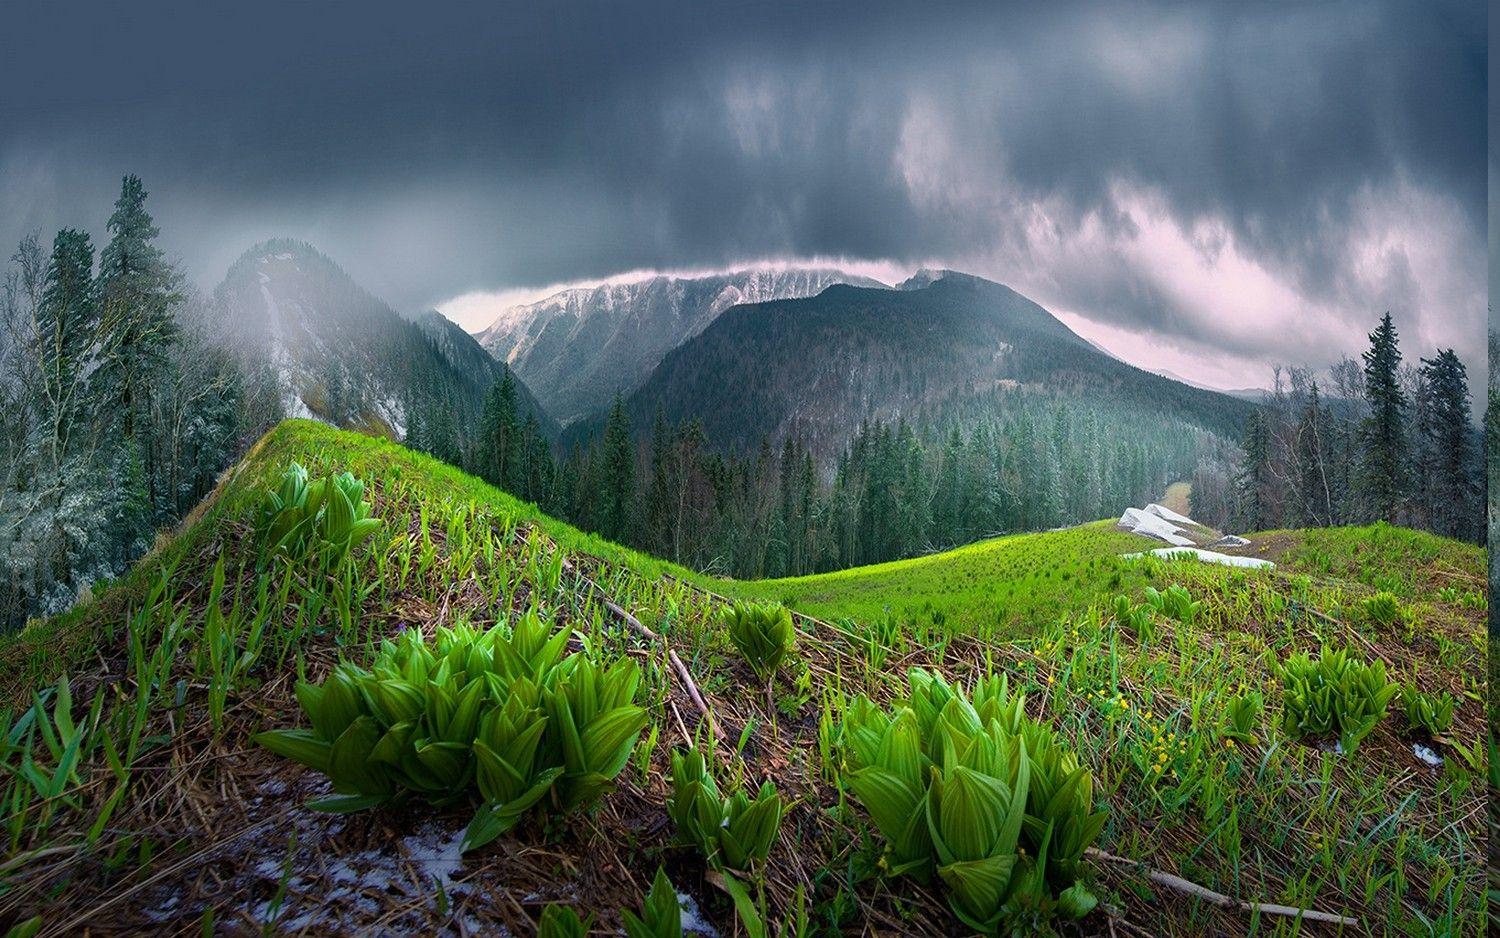 Mountain Rain HD Wallpapers - Top Free Mountain Rain HD ...